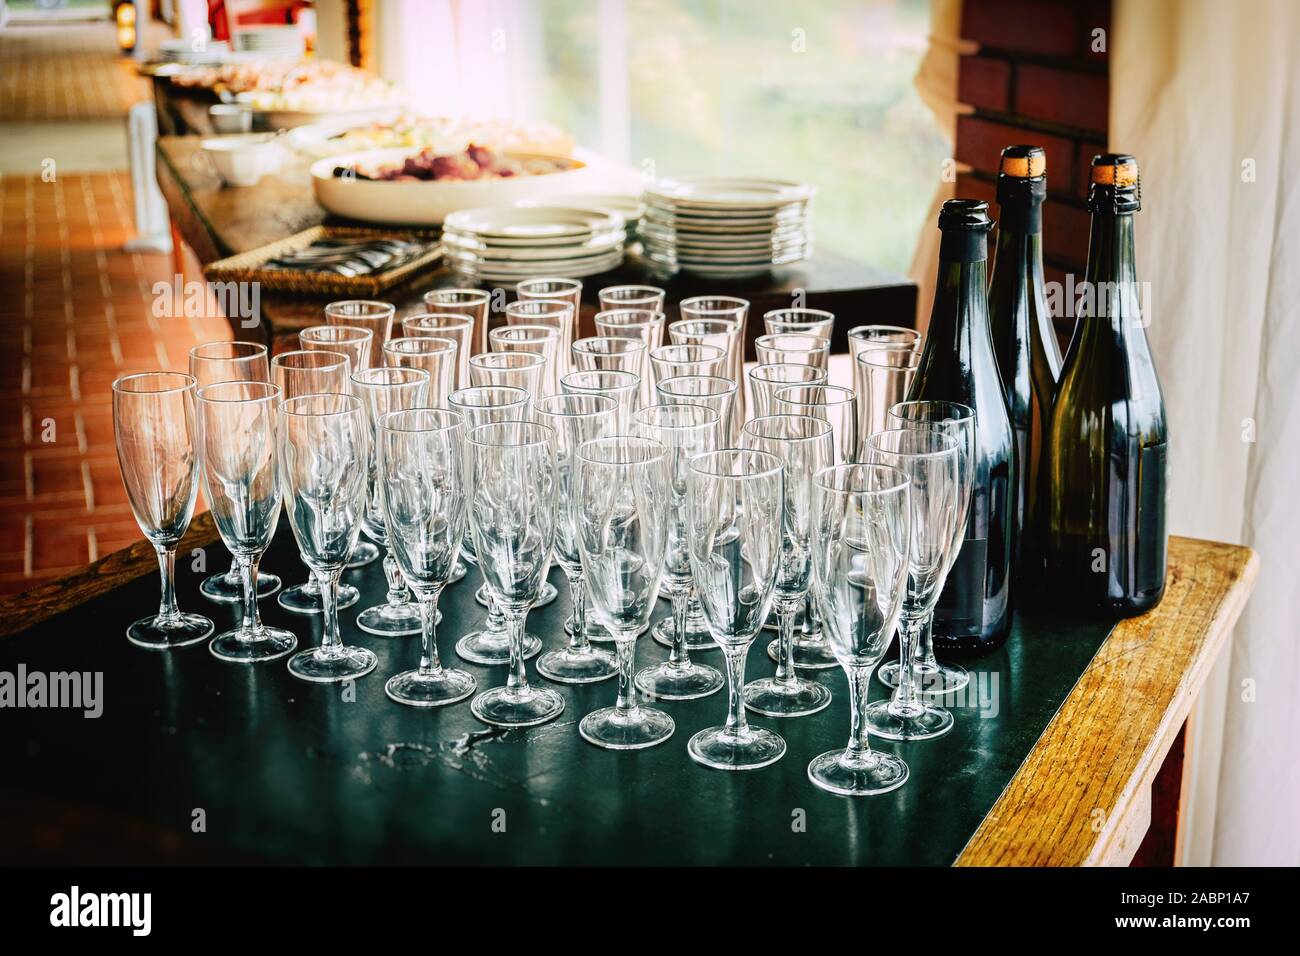 Toasten viele Gläser für Jahrestage leer Kelche Kelche vor dem Toast im Restaurant Hochzeitstag zu feiern Stockfoto